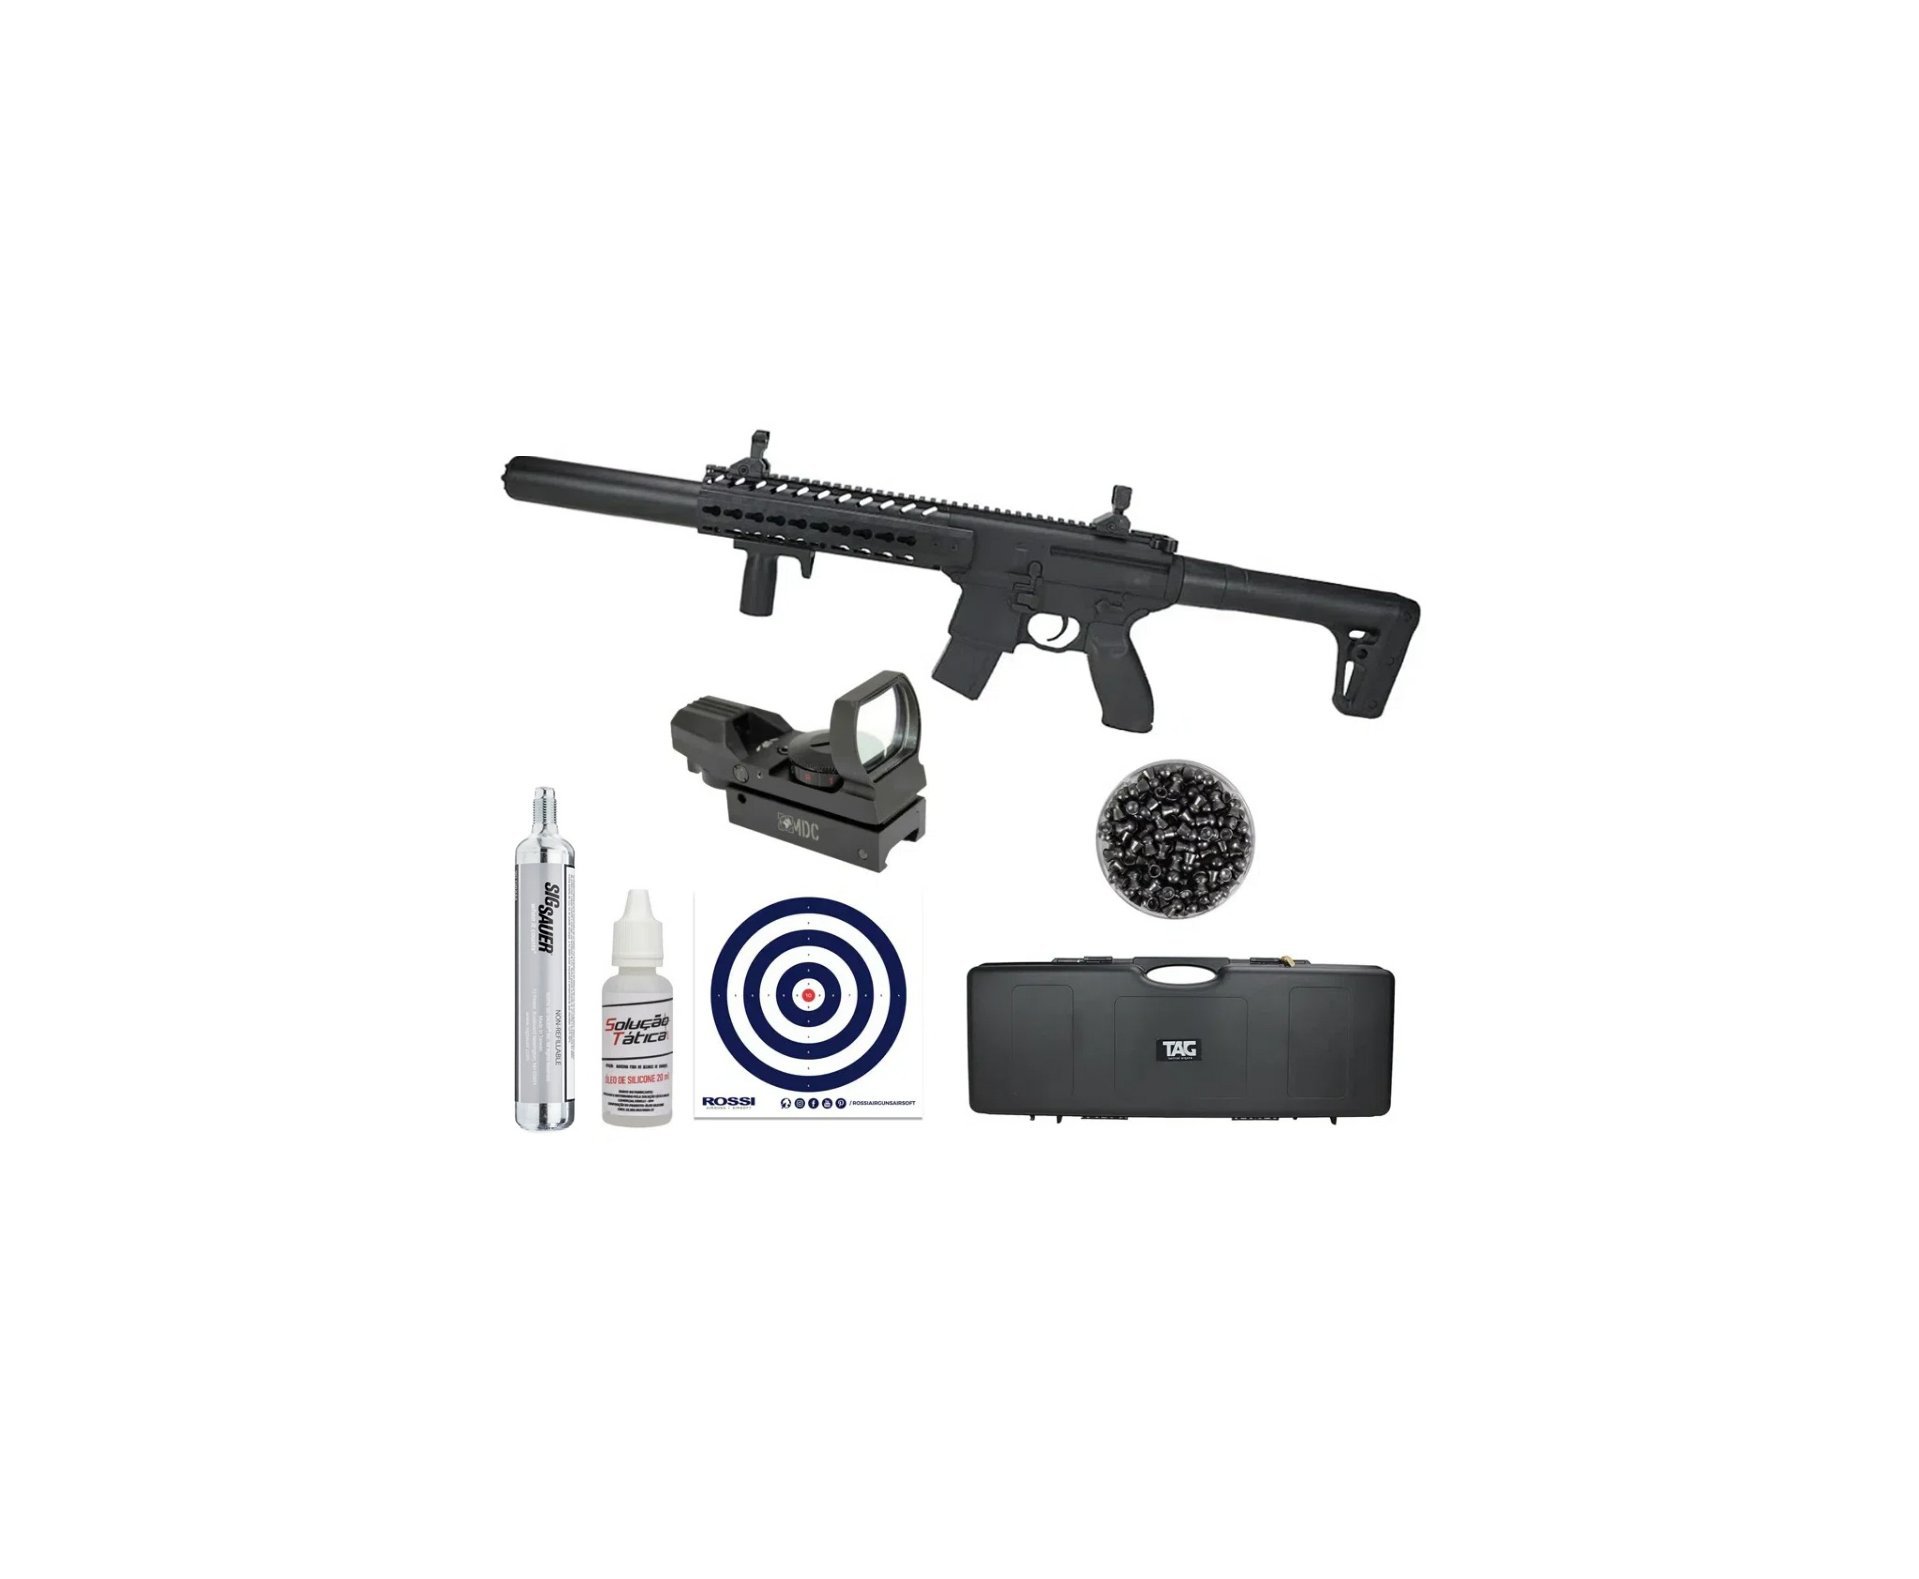 Rifle de Pressão CO2 SEMI-AUTO Sig Sauer MCX 30 BK 4,5mm Chumbinho + Case Rígido + Alvos + Chumbo + Óleo de silicone + Red dot + Co2